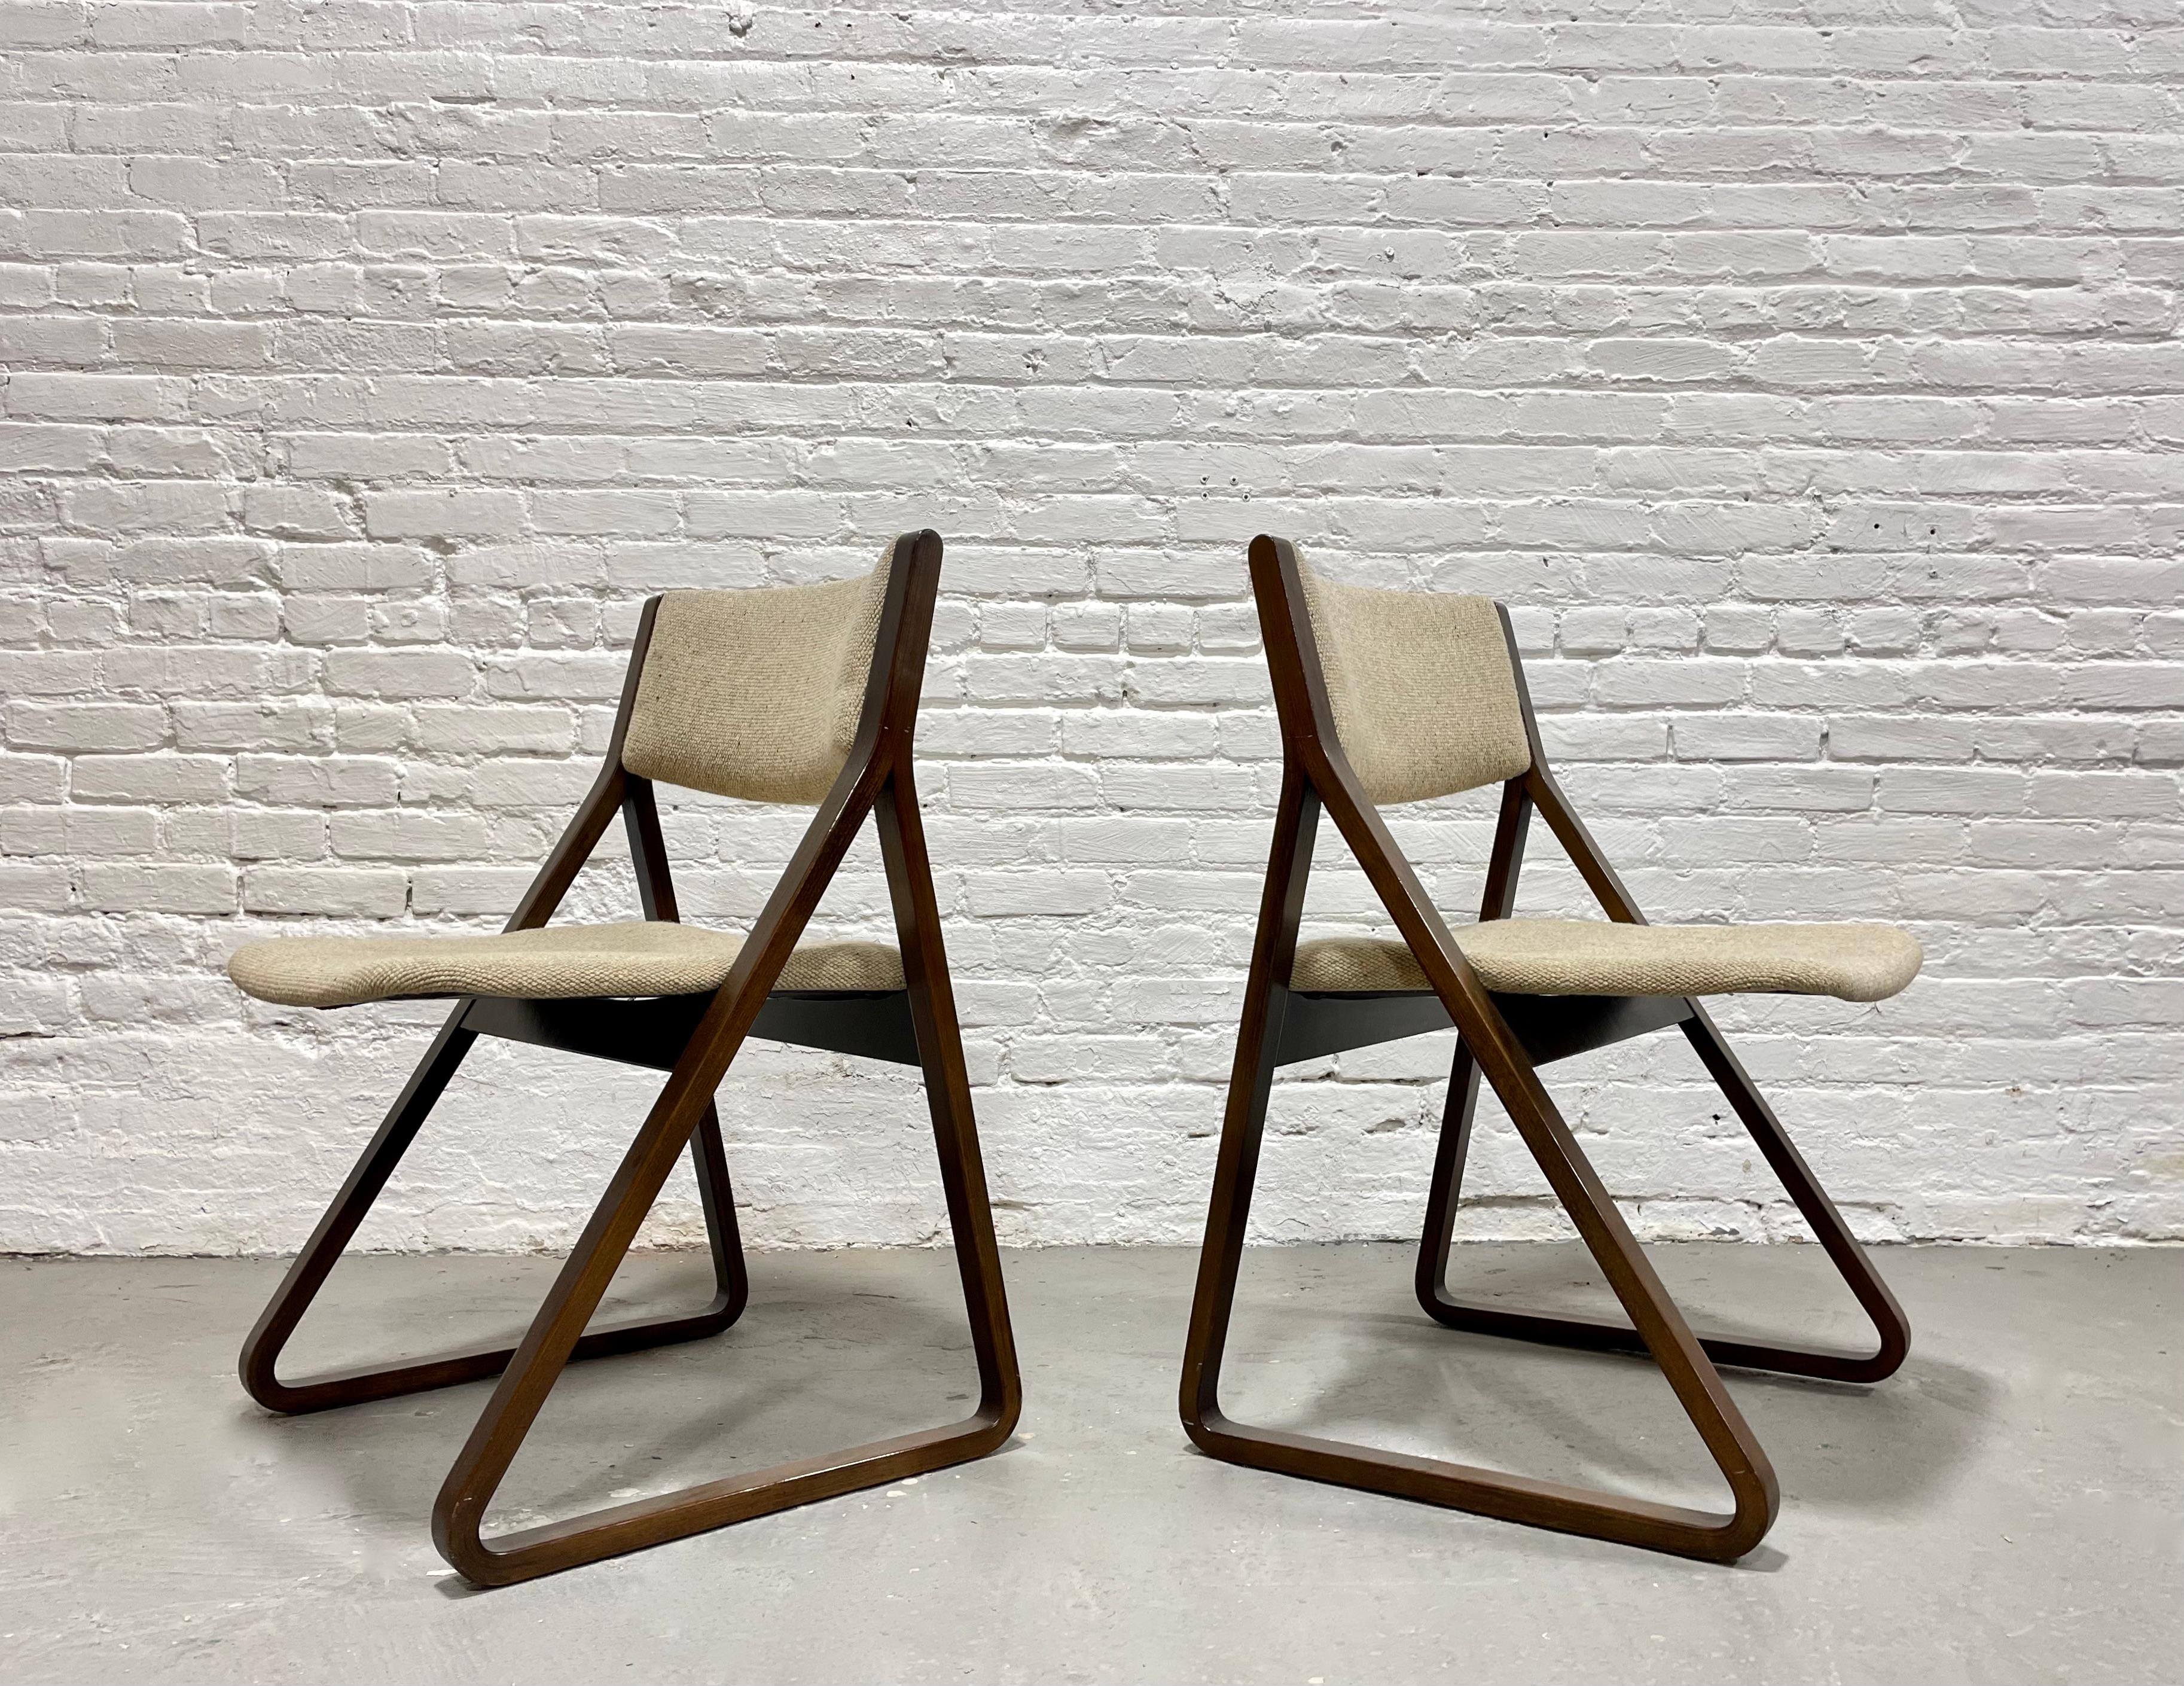 stylish folding chairs